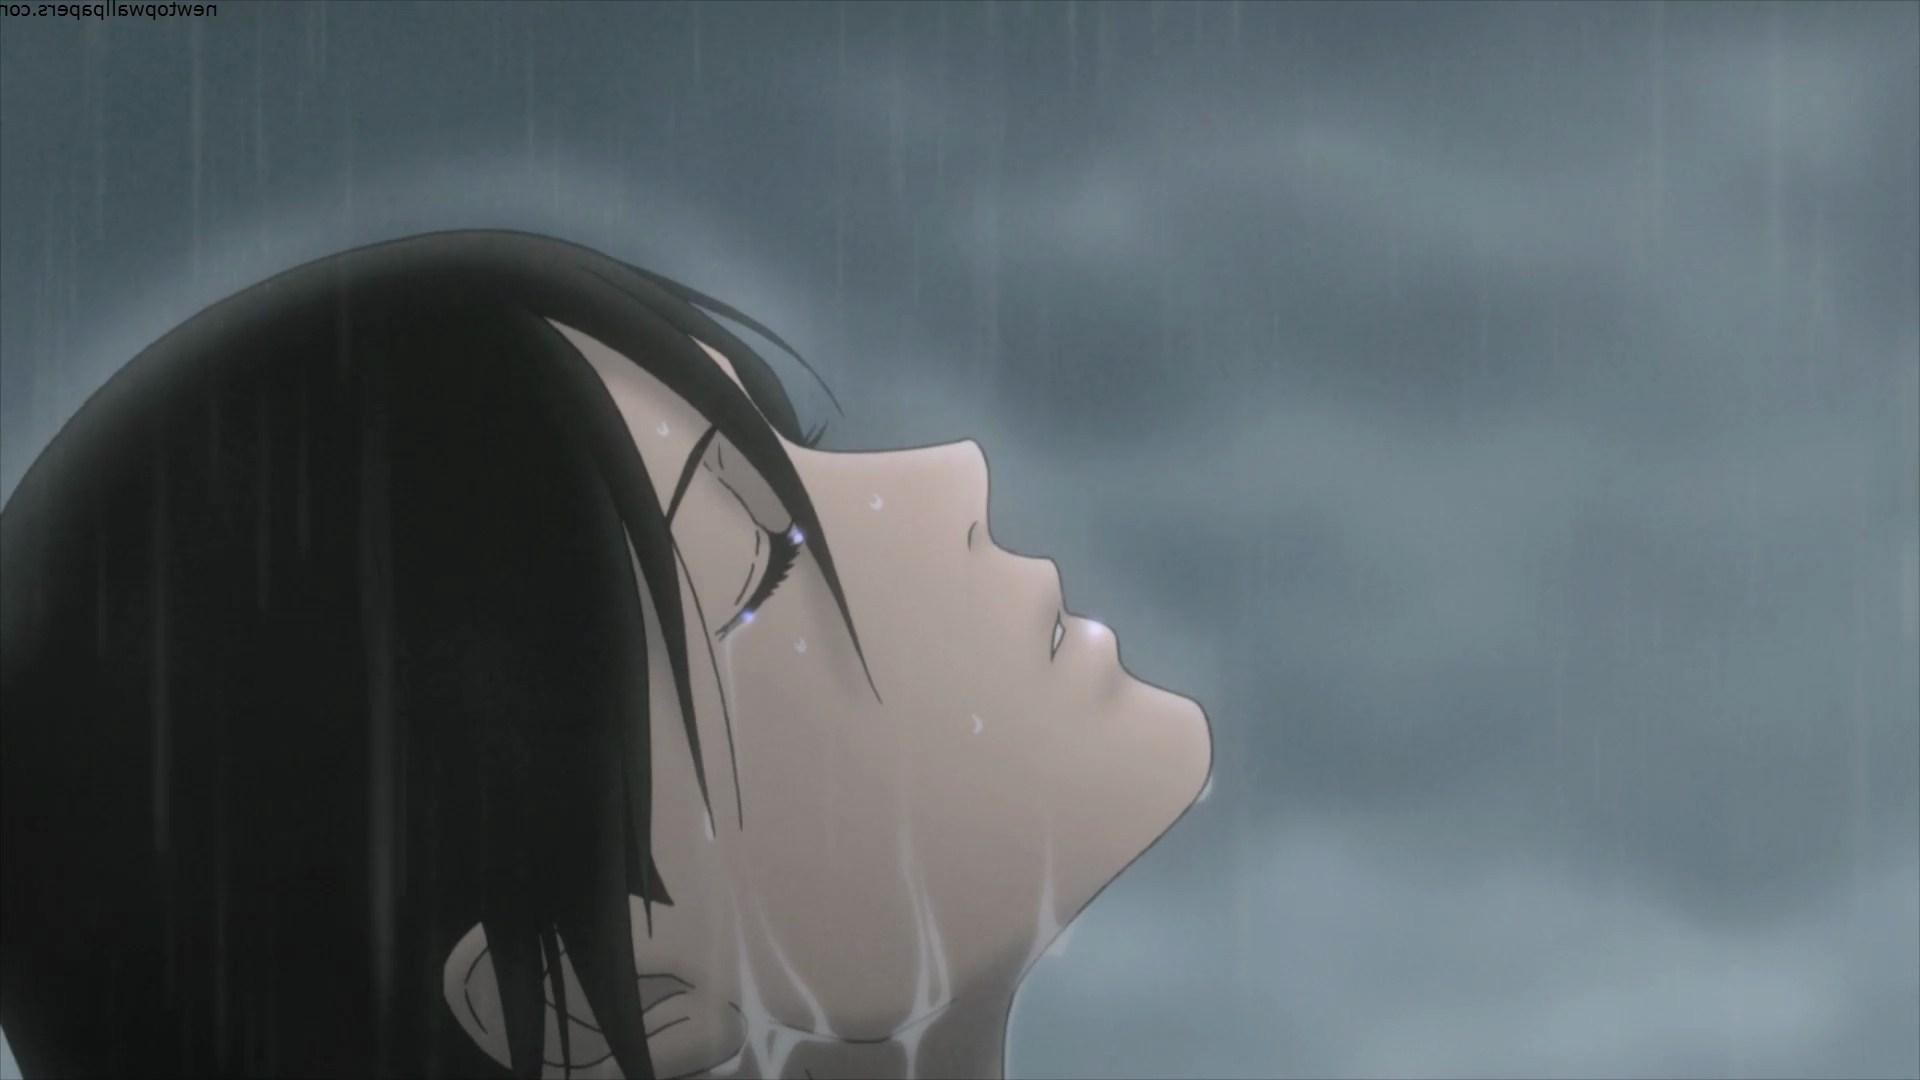 Drawn Rain Alone Boy 5 Download Source Anime Boy HD